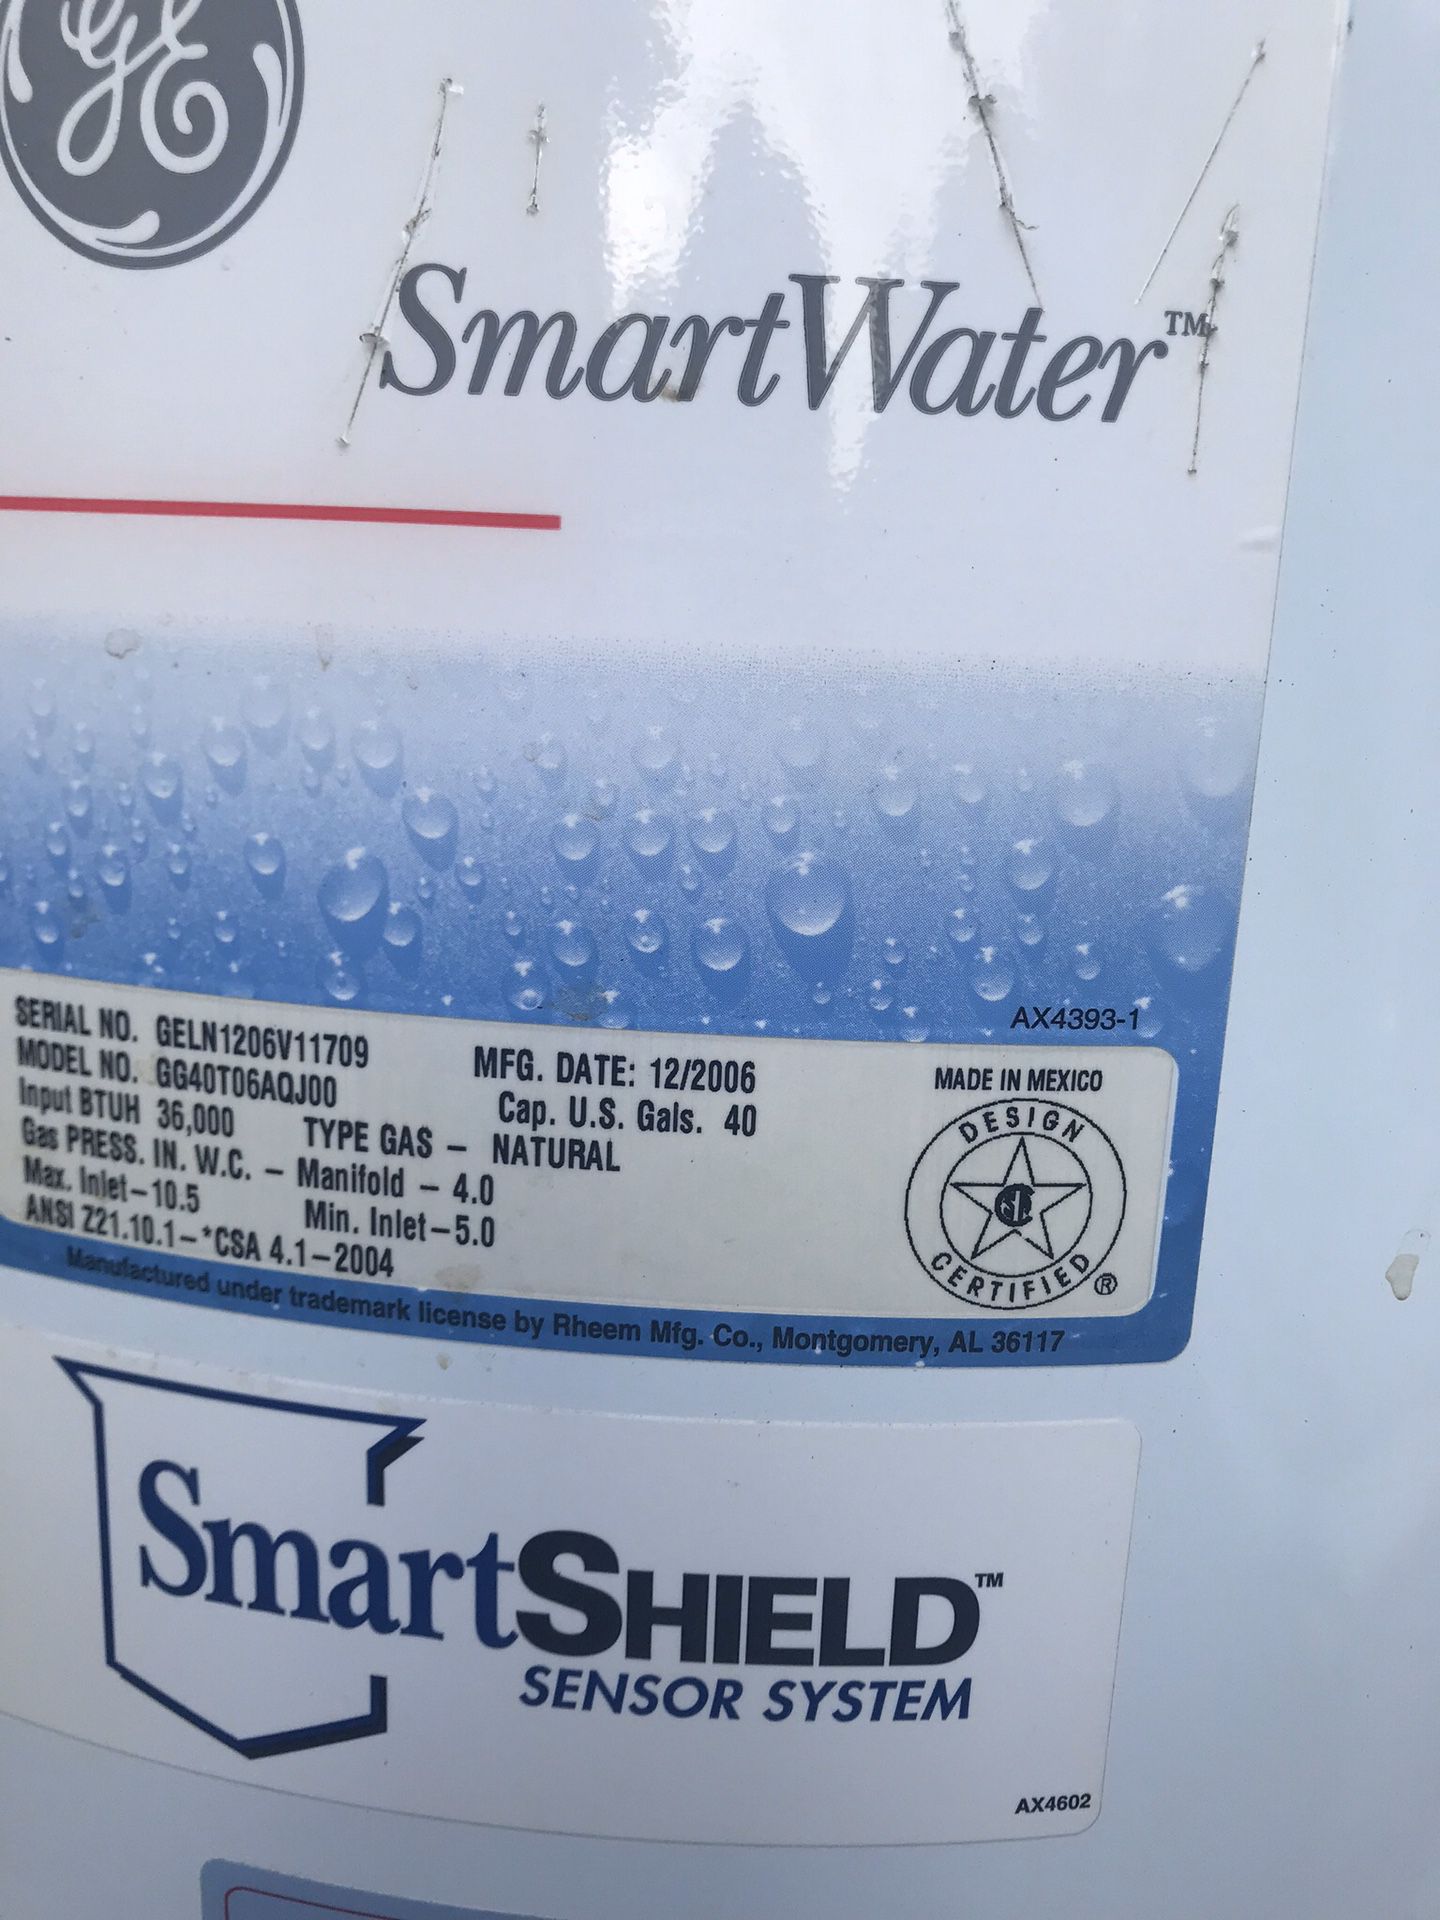 GE Water heater smart shield